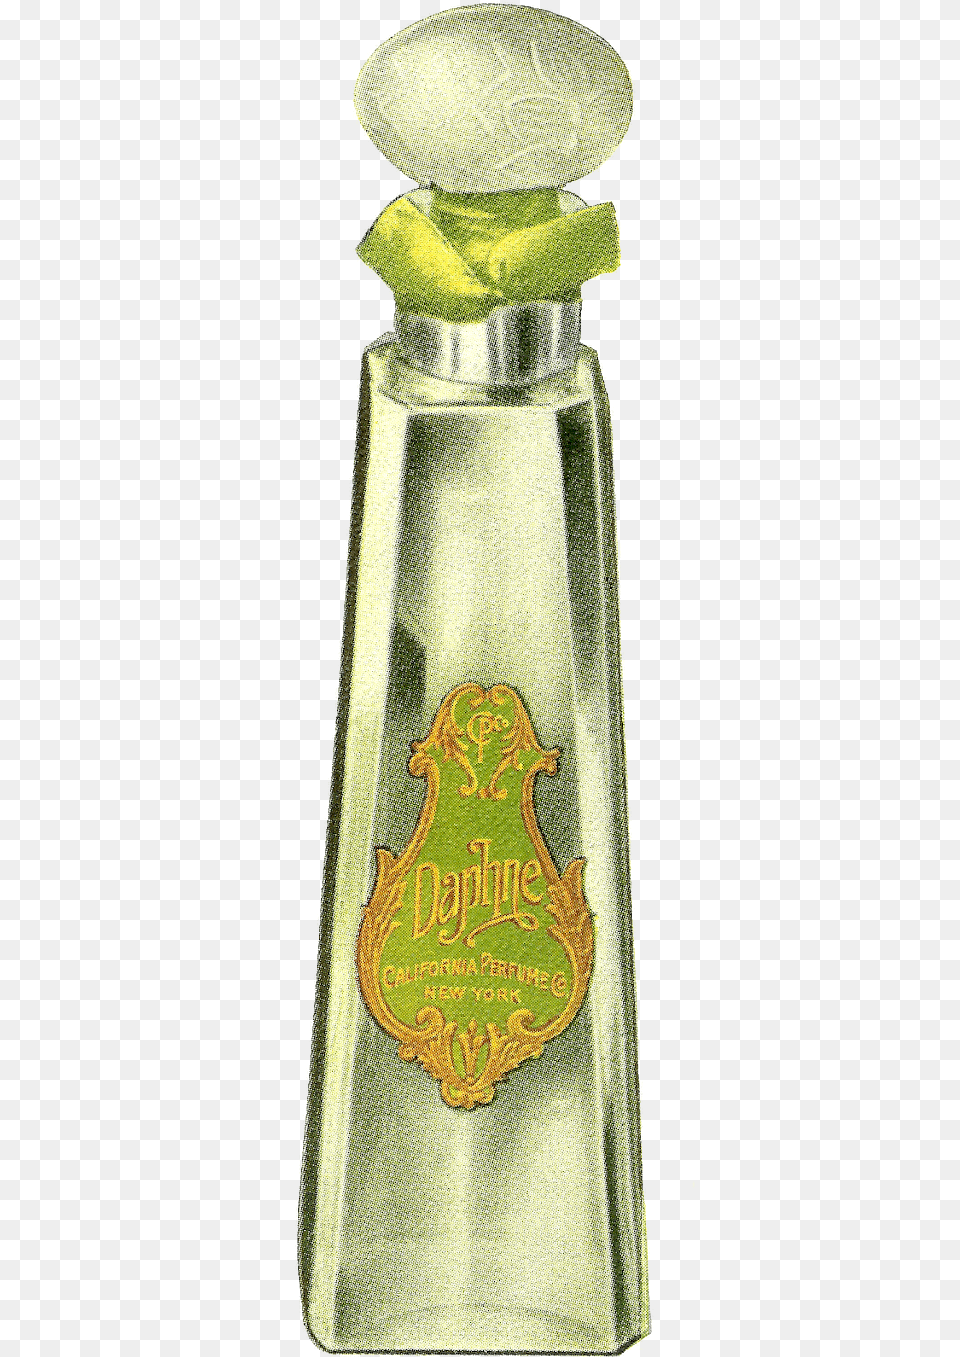 Digital Old Perfume Bottle Clip Art Downloads Clip Art, Logo, Alcohol, Beverage, Liquor Png Image